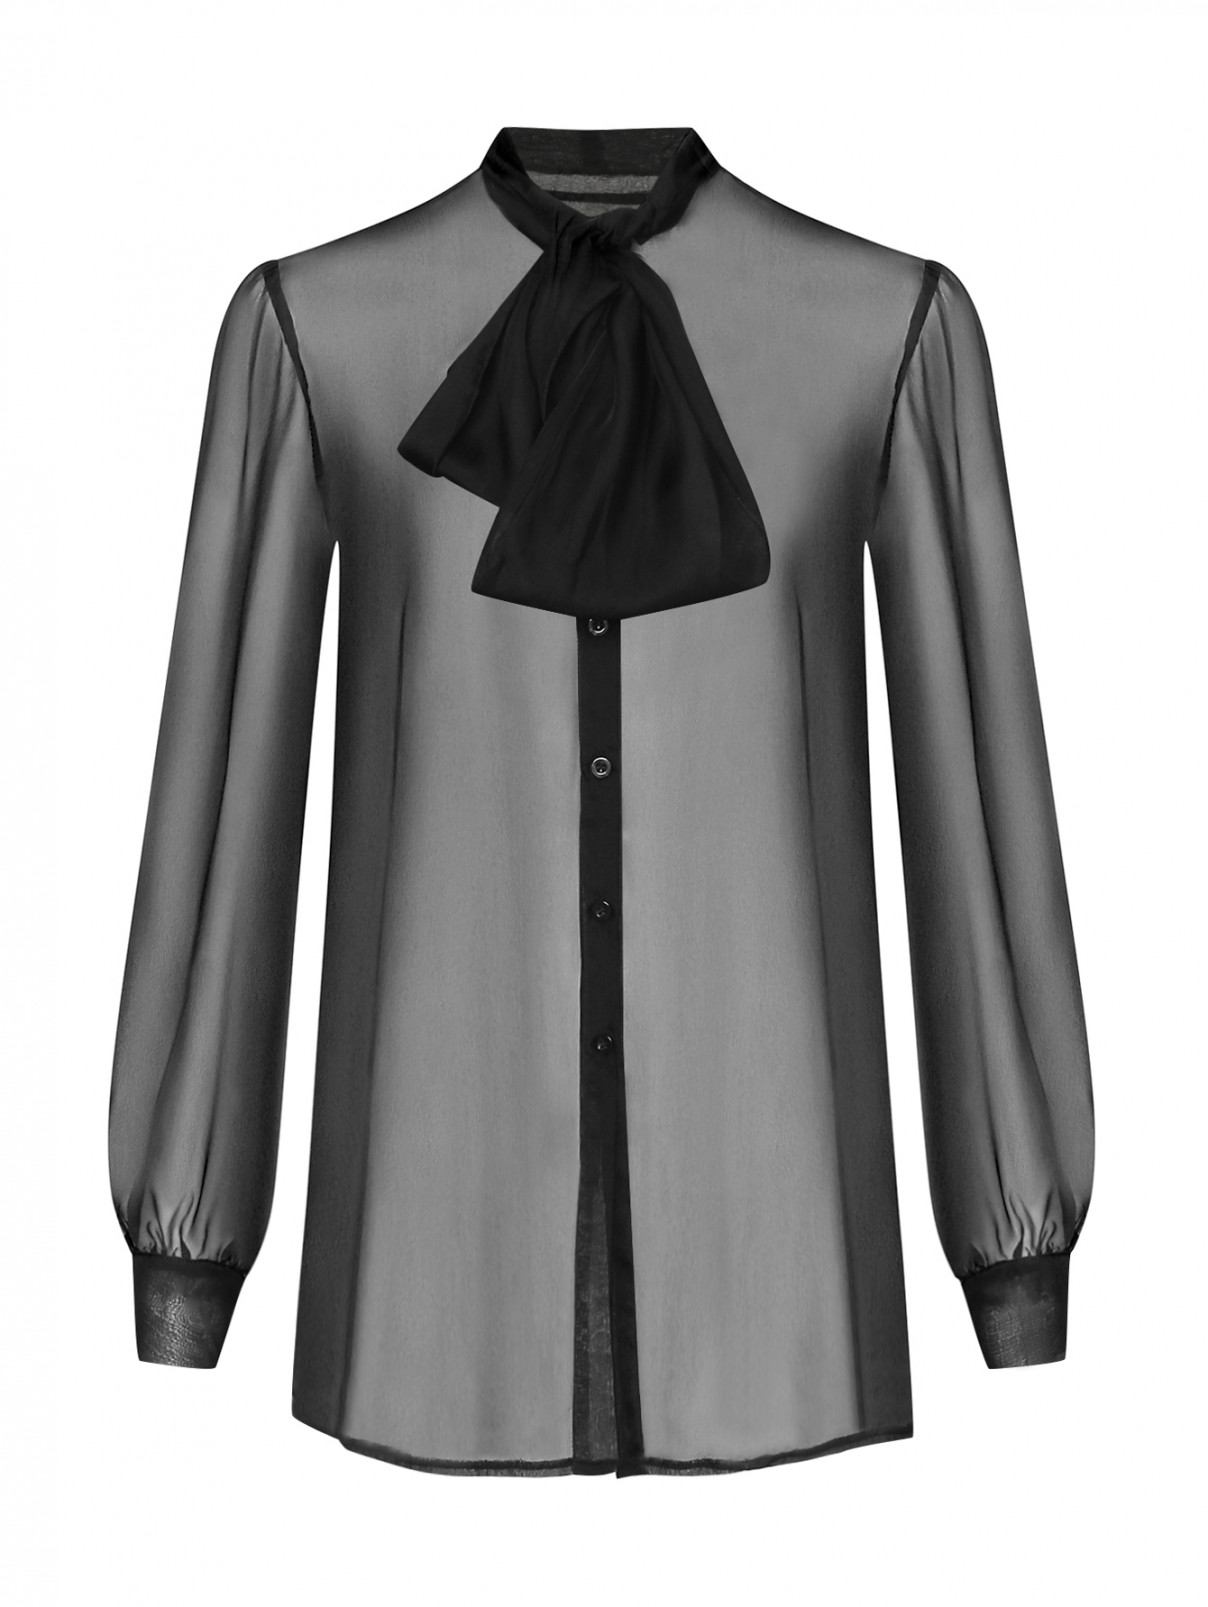 Блуза из шелка с бантом Ombra  –  Общий вид  – Цвет:  Черный